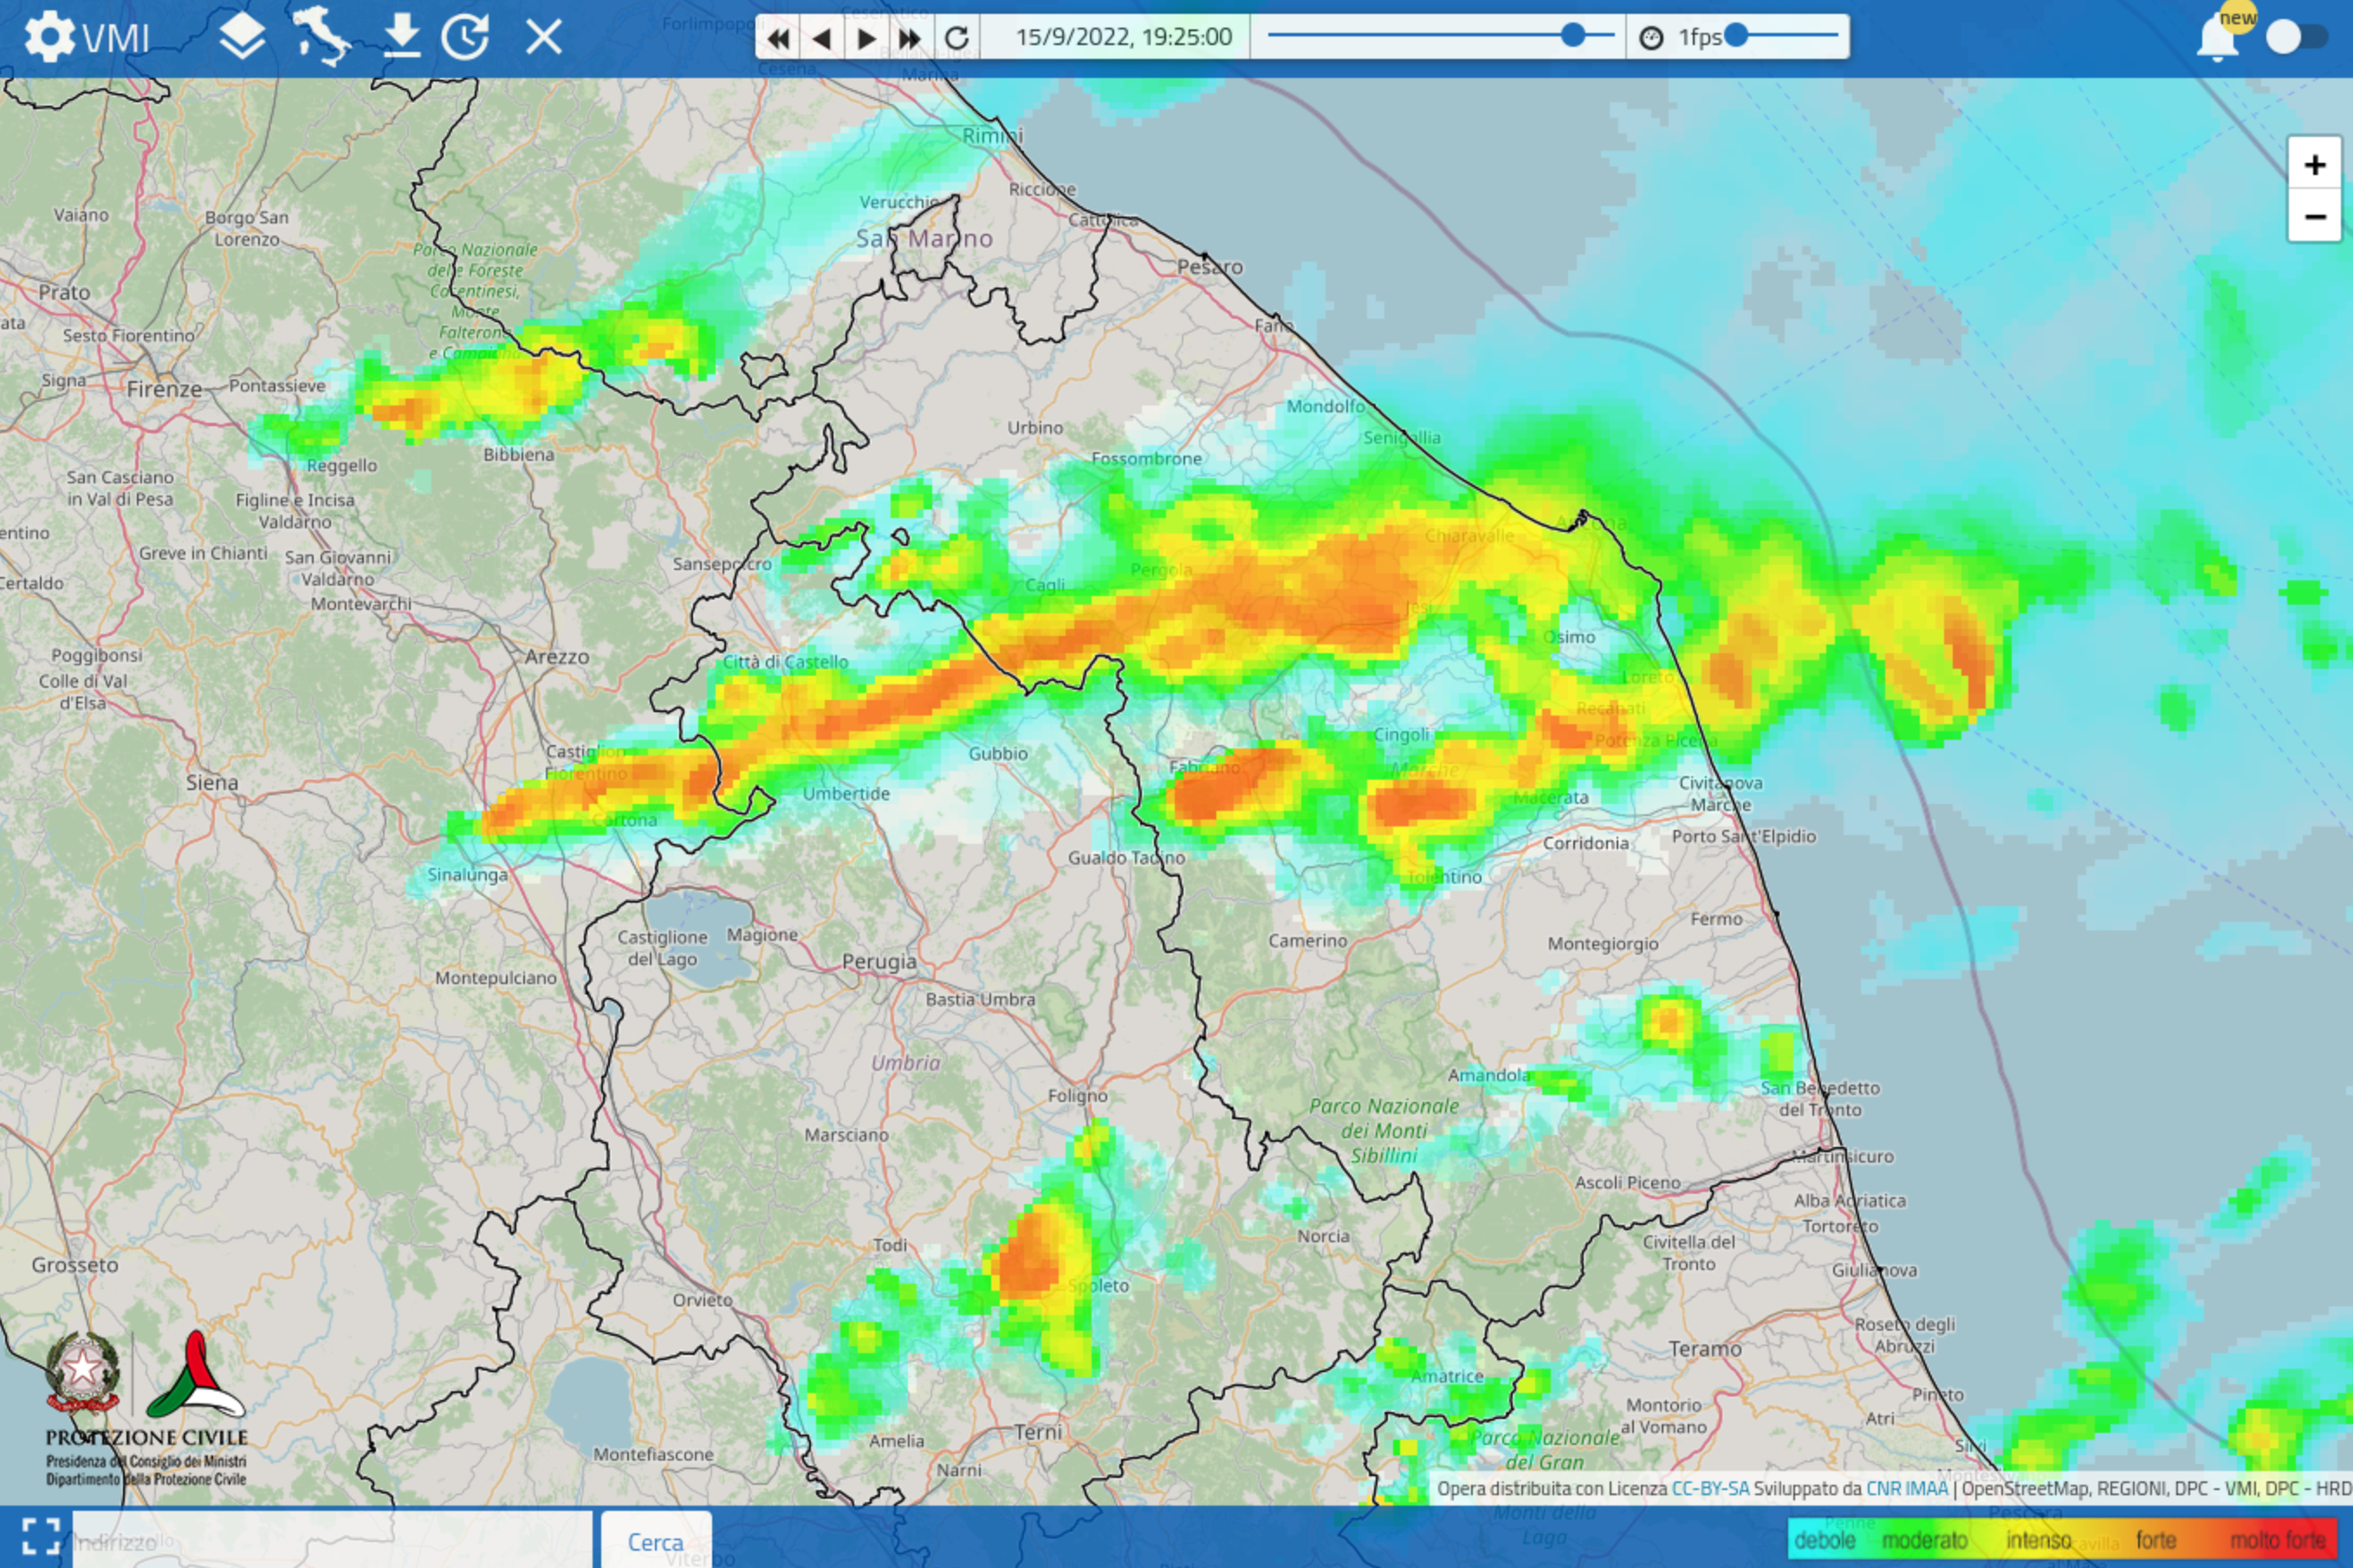 Meteo ASSAM Regione Marche - immagine radar prot civile 2